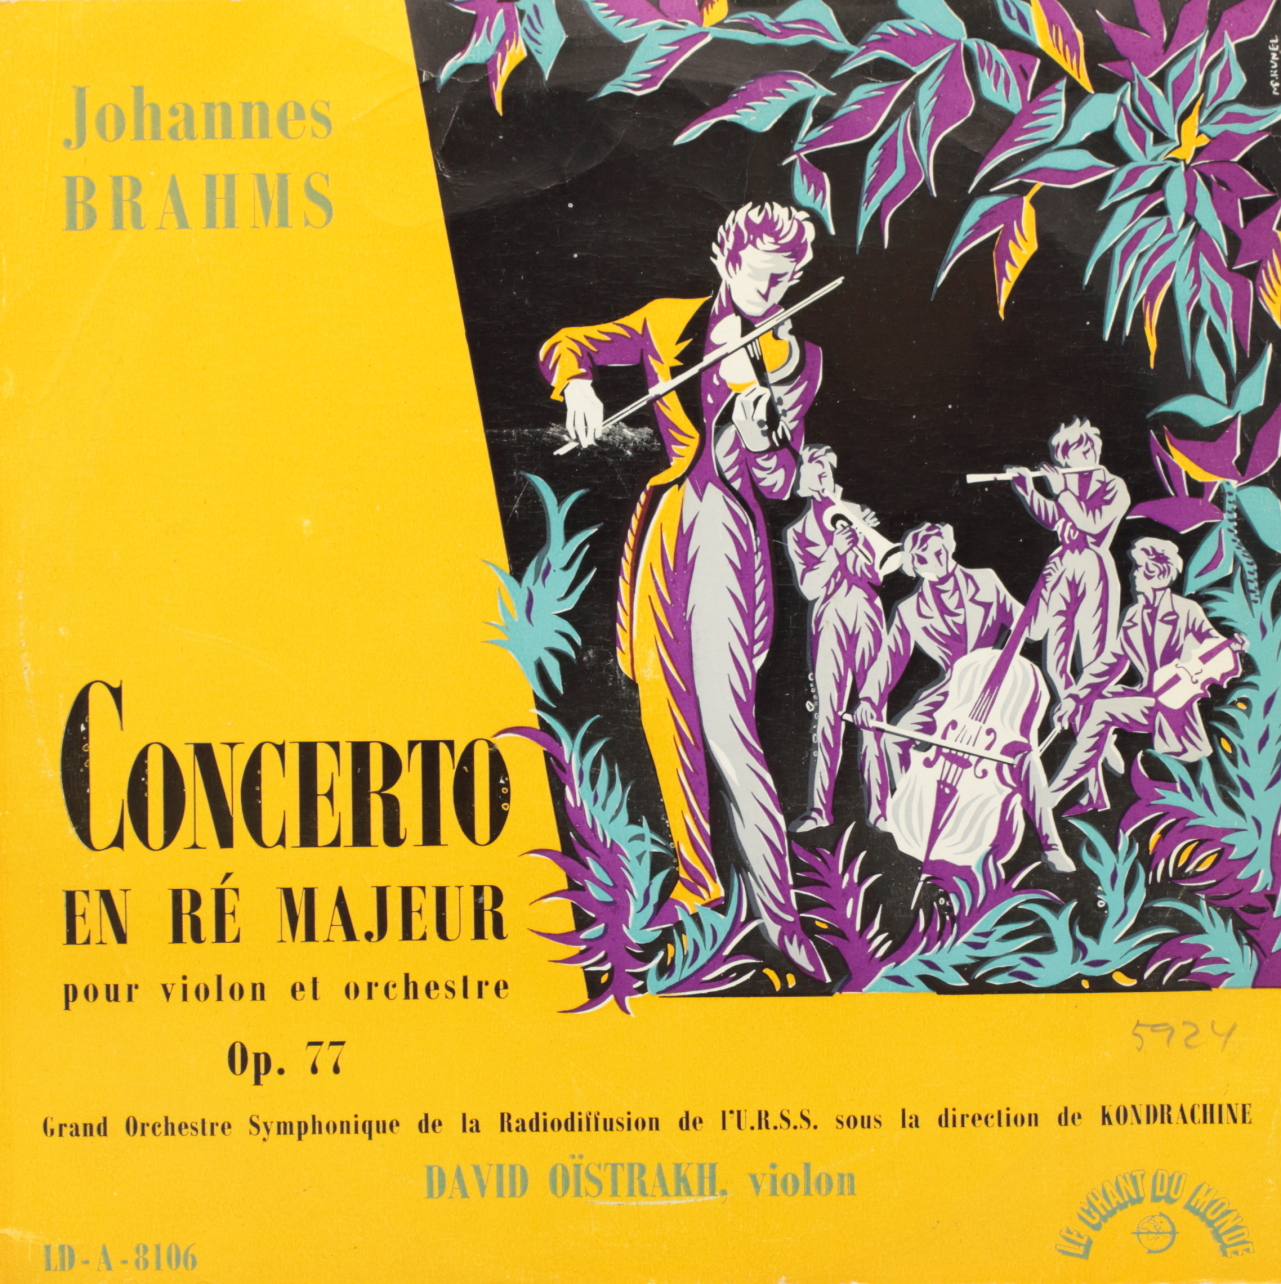 Brahms: Concerto en Re majeur pour violon et orchestre, Op. 77